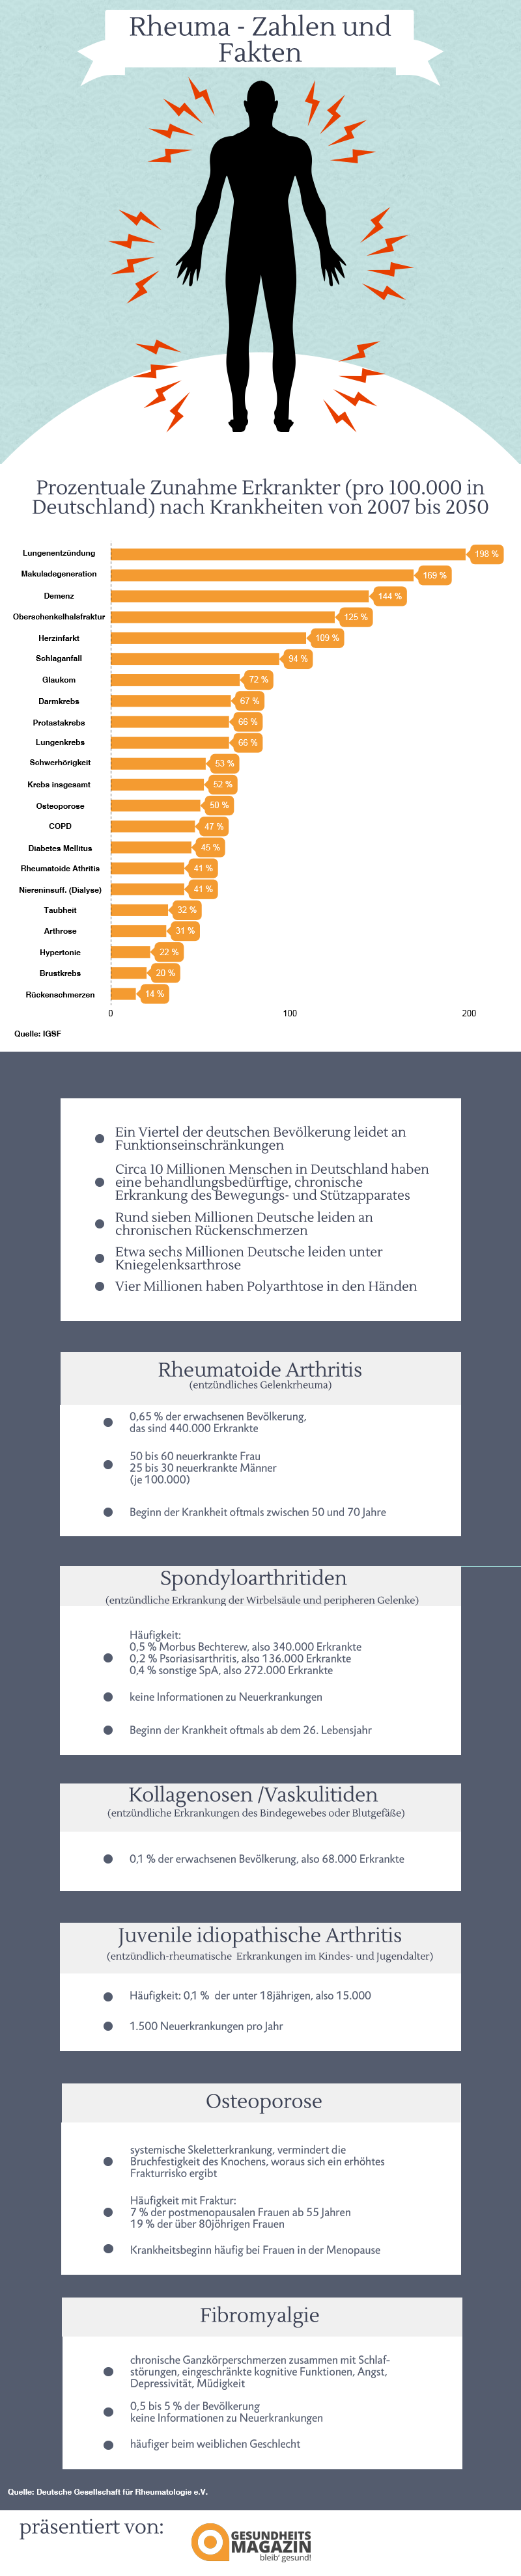 Infografik Zunahmen von Krankheiten allgemein und spezifisch Rheuma-Kranken in Deutschland.